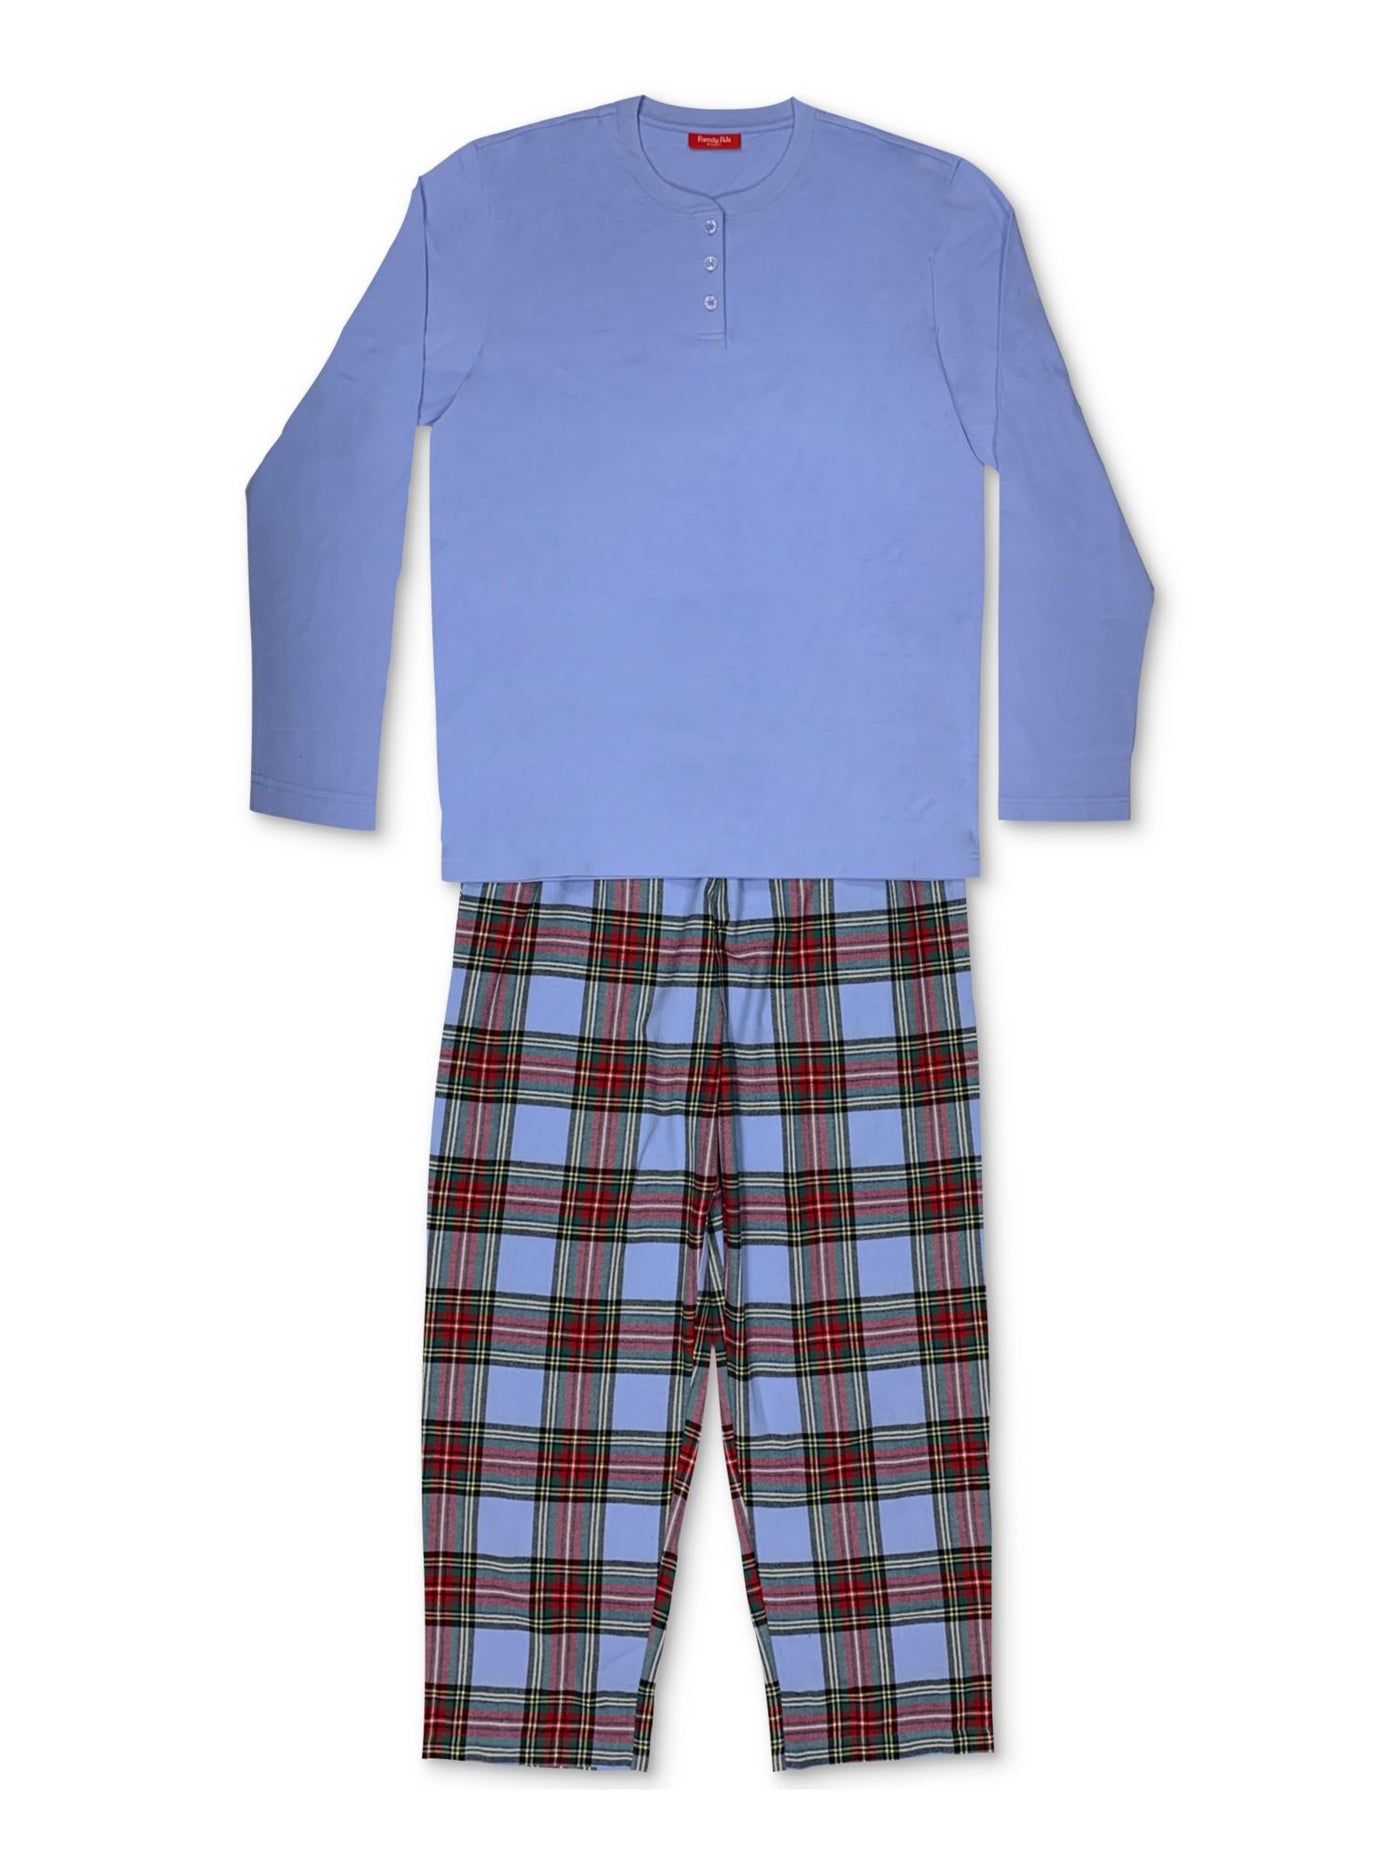 FAMILY PJs Intimates Light Blue Set Plaid Pajamas S